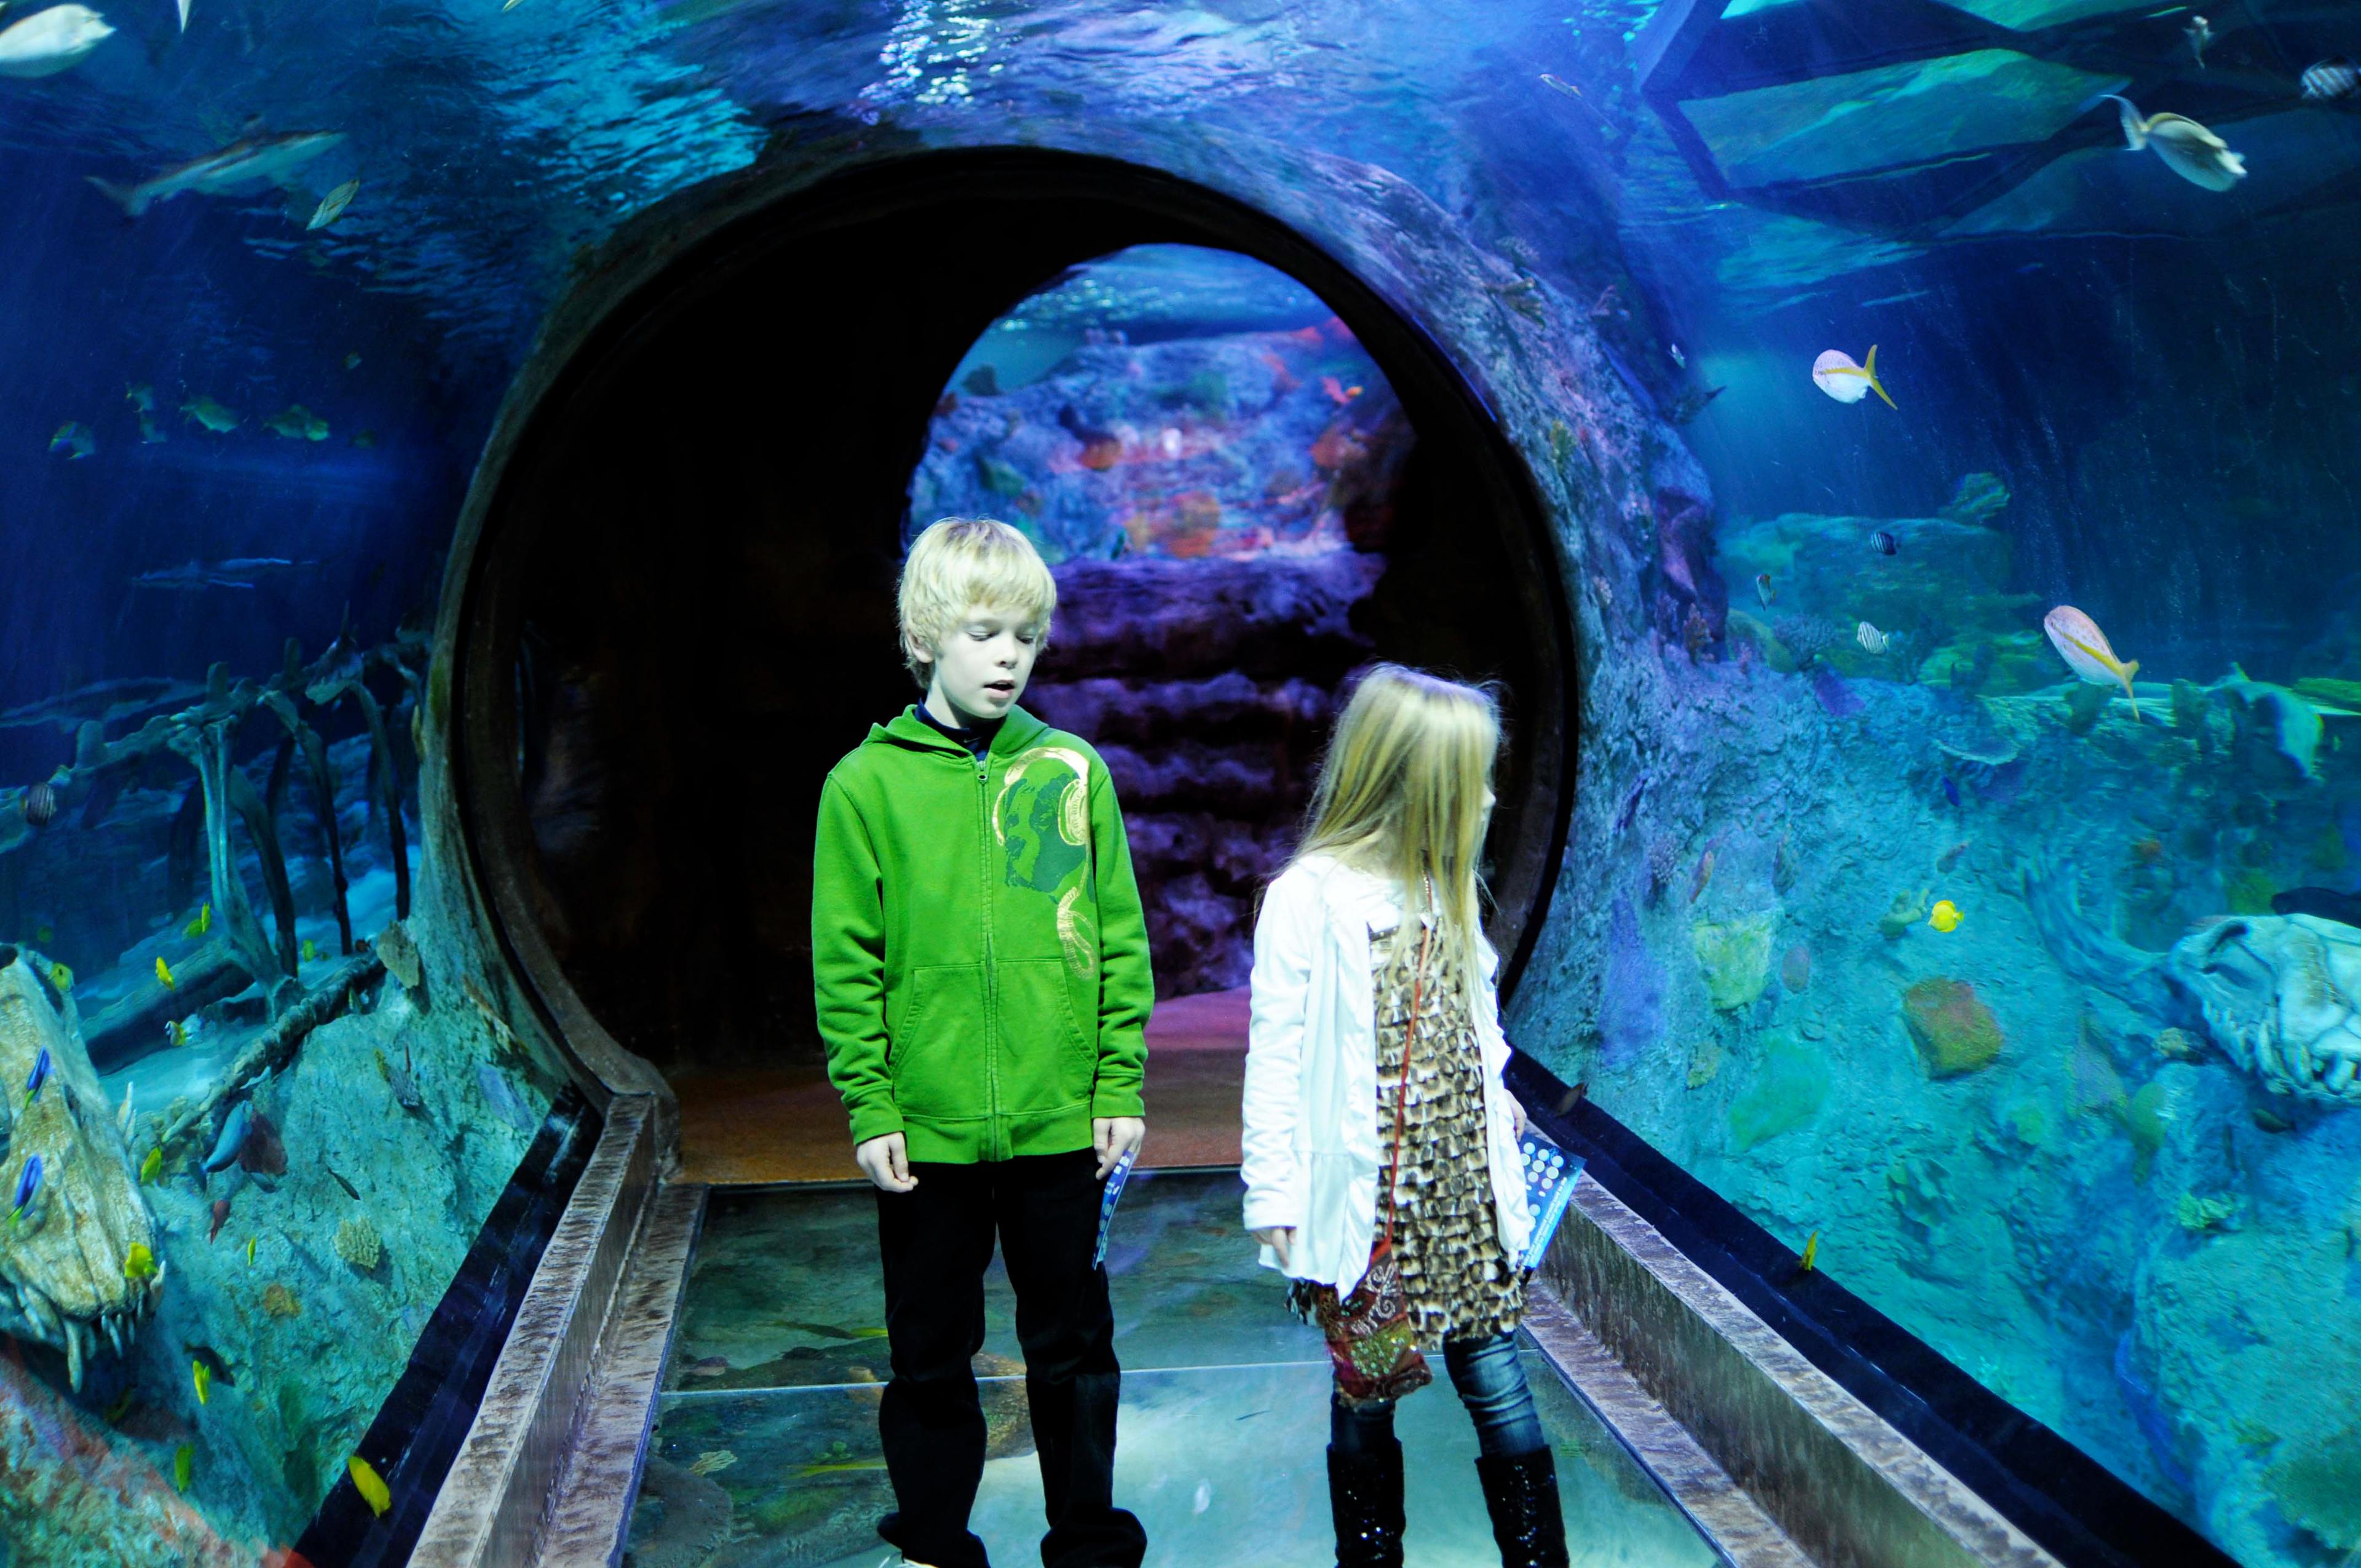 Cover image of this place Sea Life Aquarium